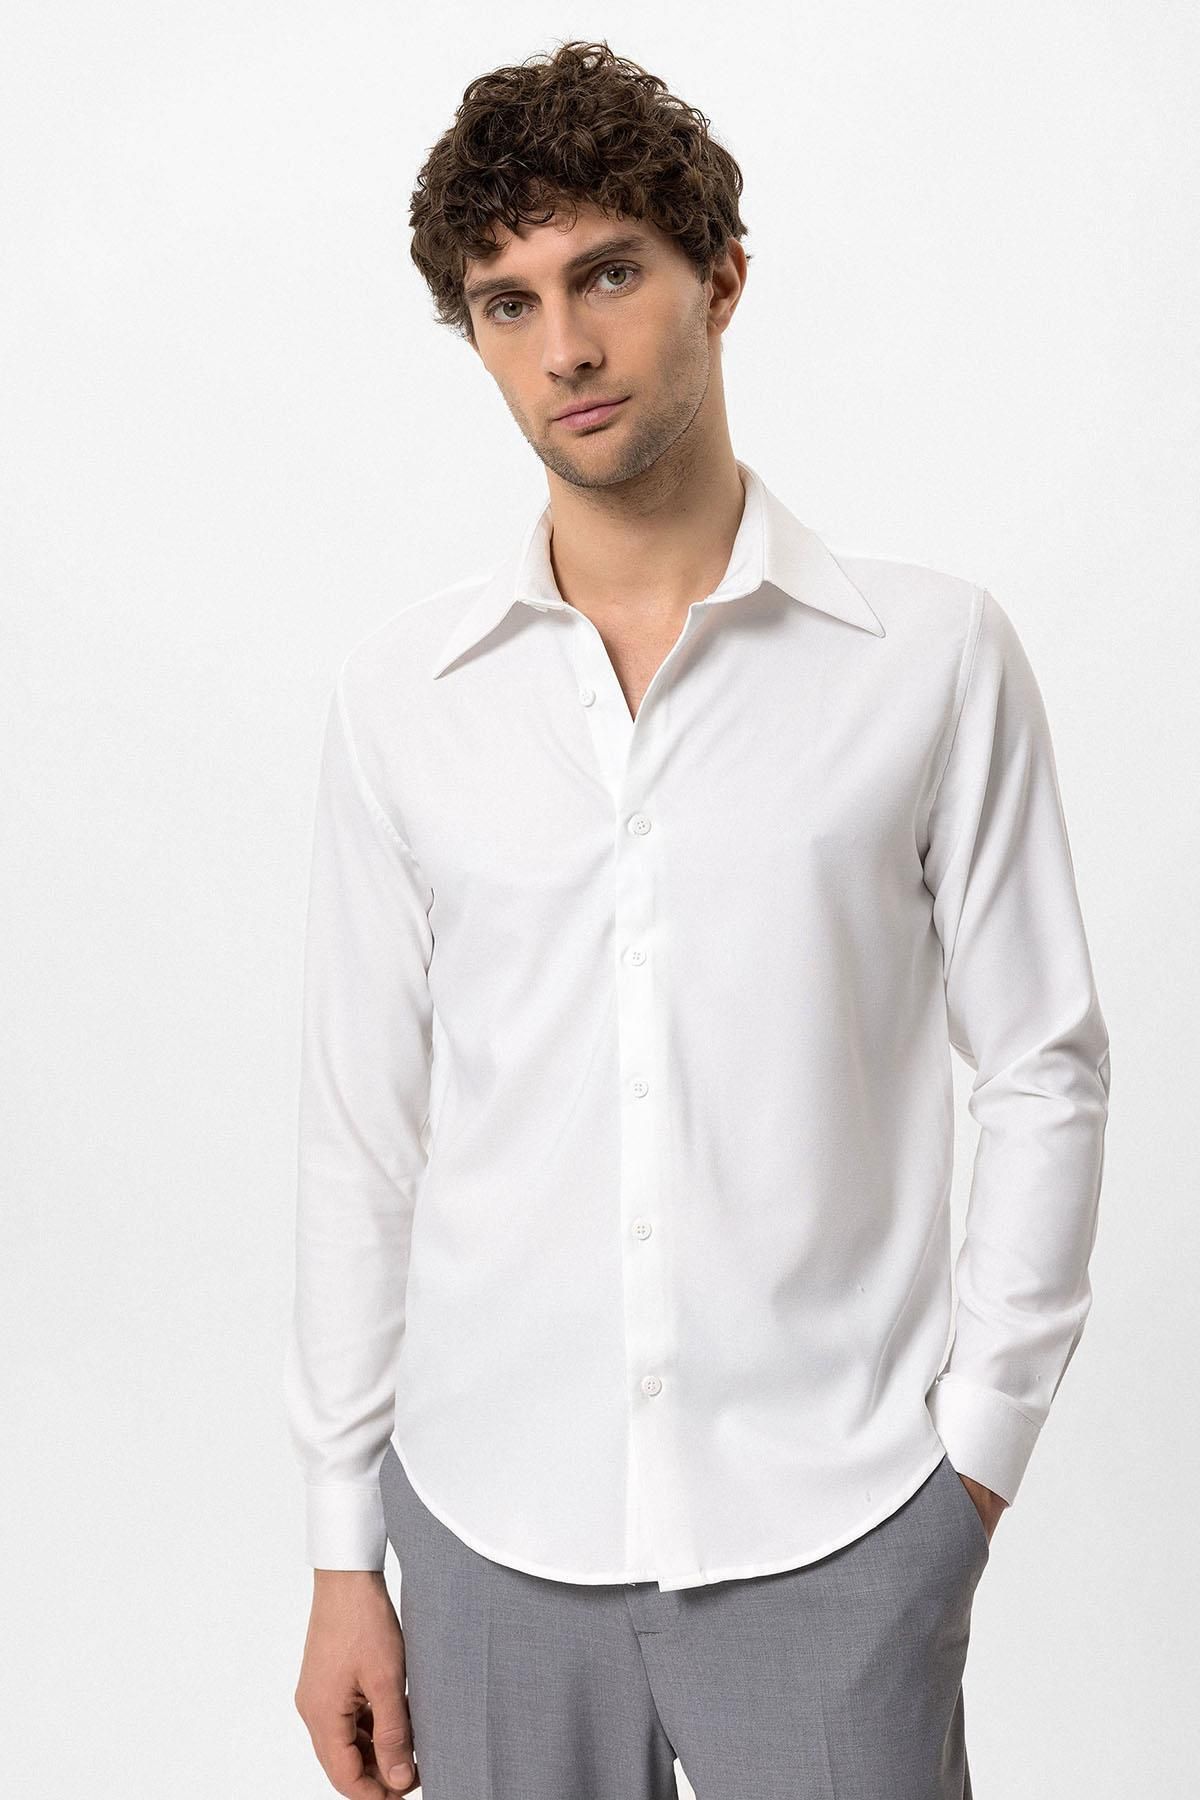 Antioch Beyaz Slim Fit Erkek Uzun Kollu Geniş Yaka Gömlek